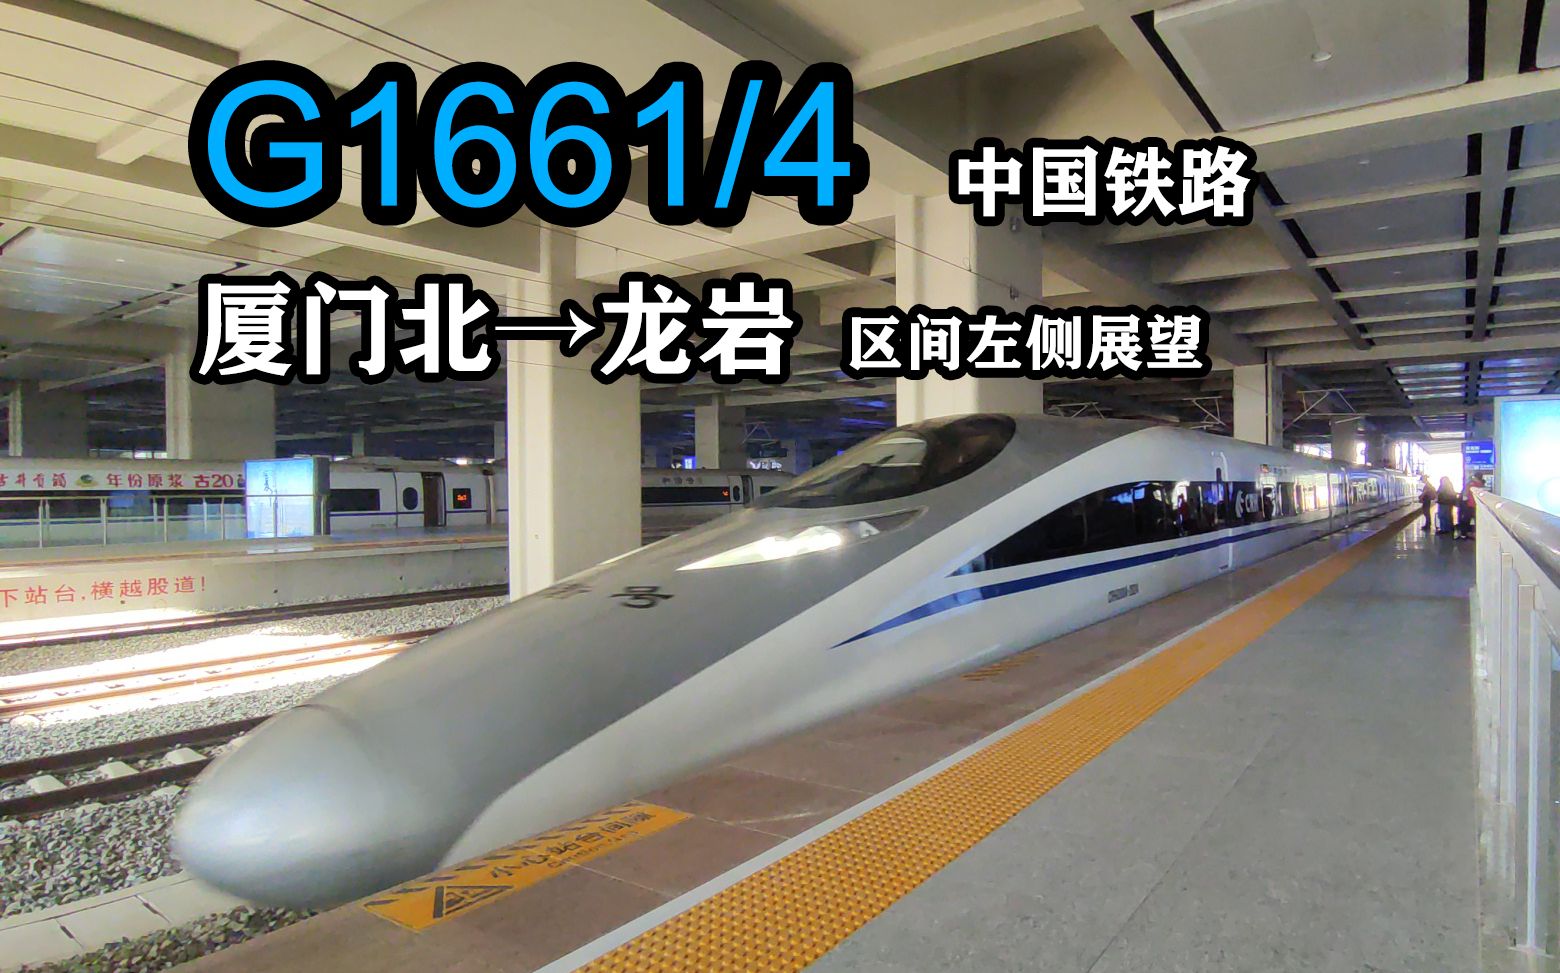 【福建晴朗的寒冬】中国铁路G1661/4次 厦门北-龙岩 区间展望